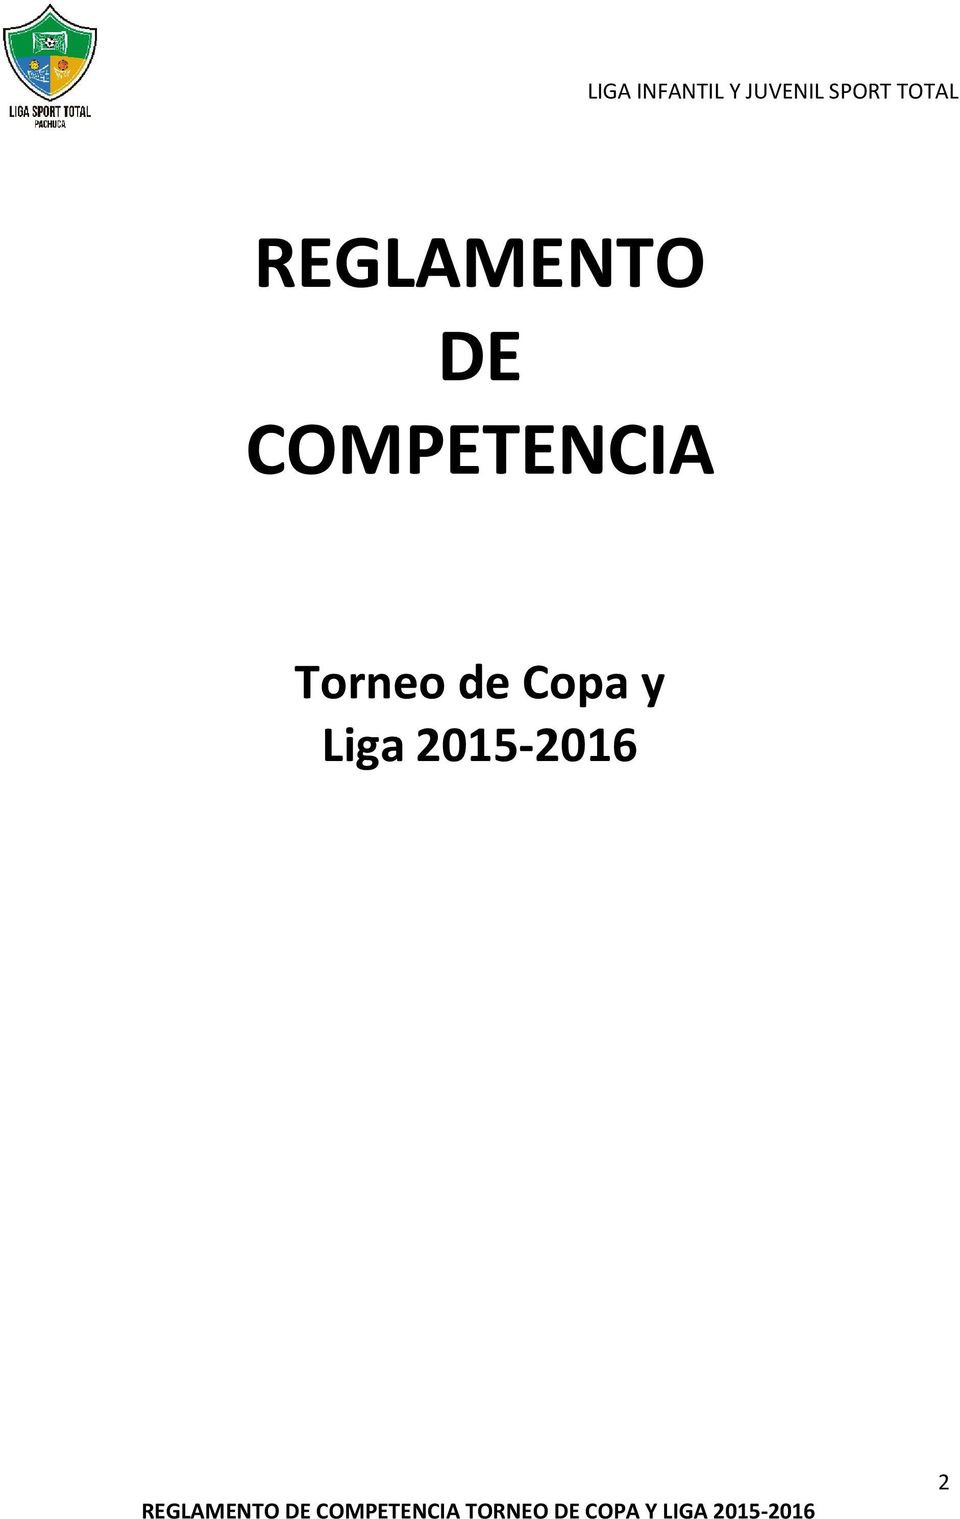 2015-2016  TORNEO DE COPA Y